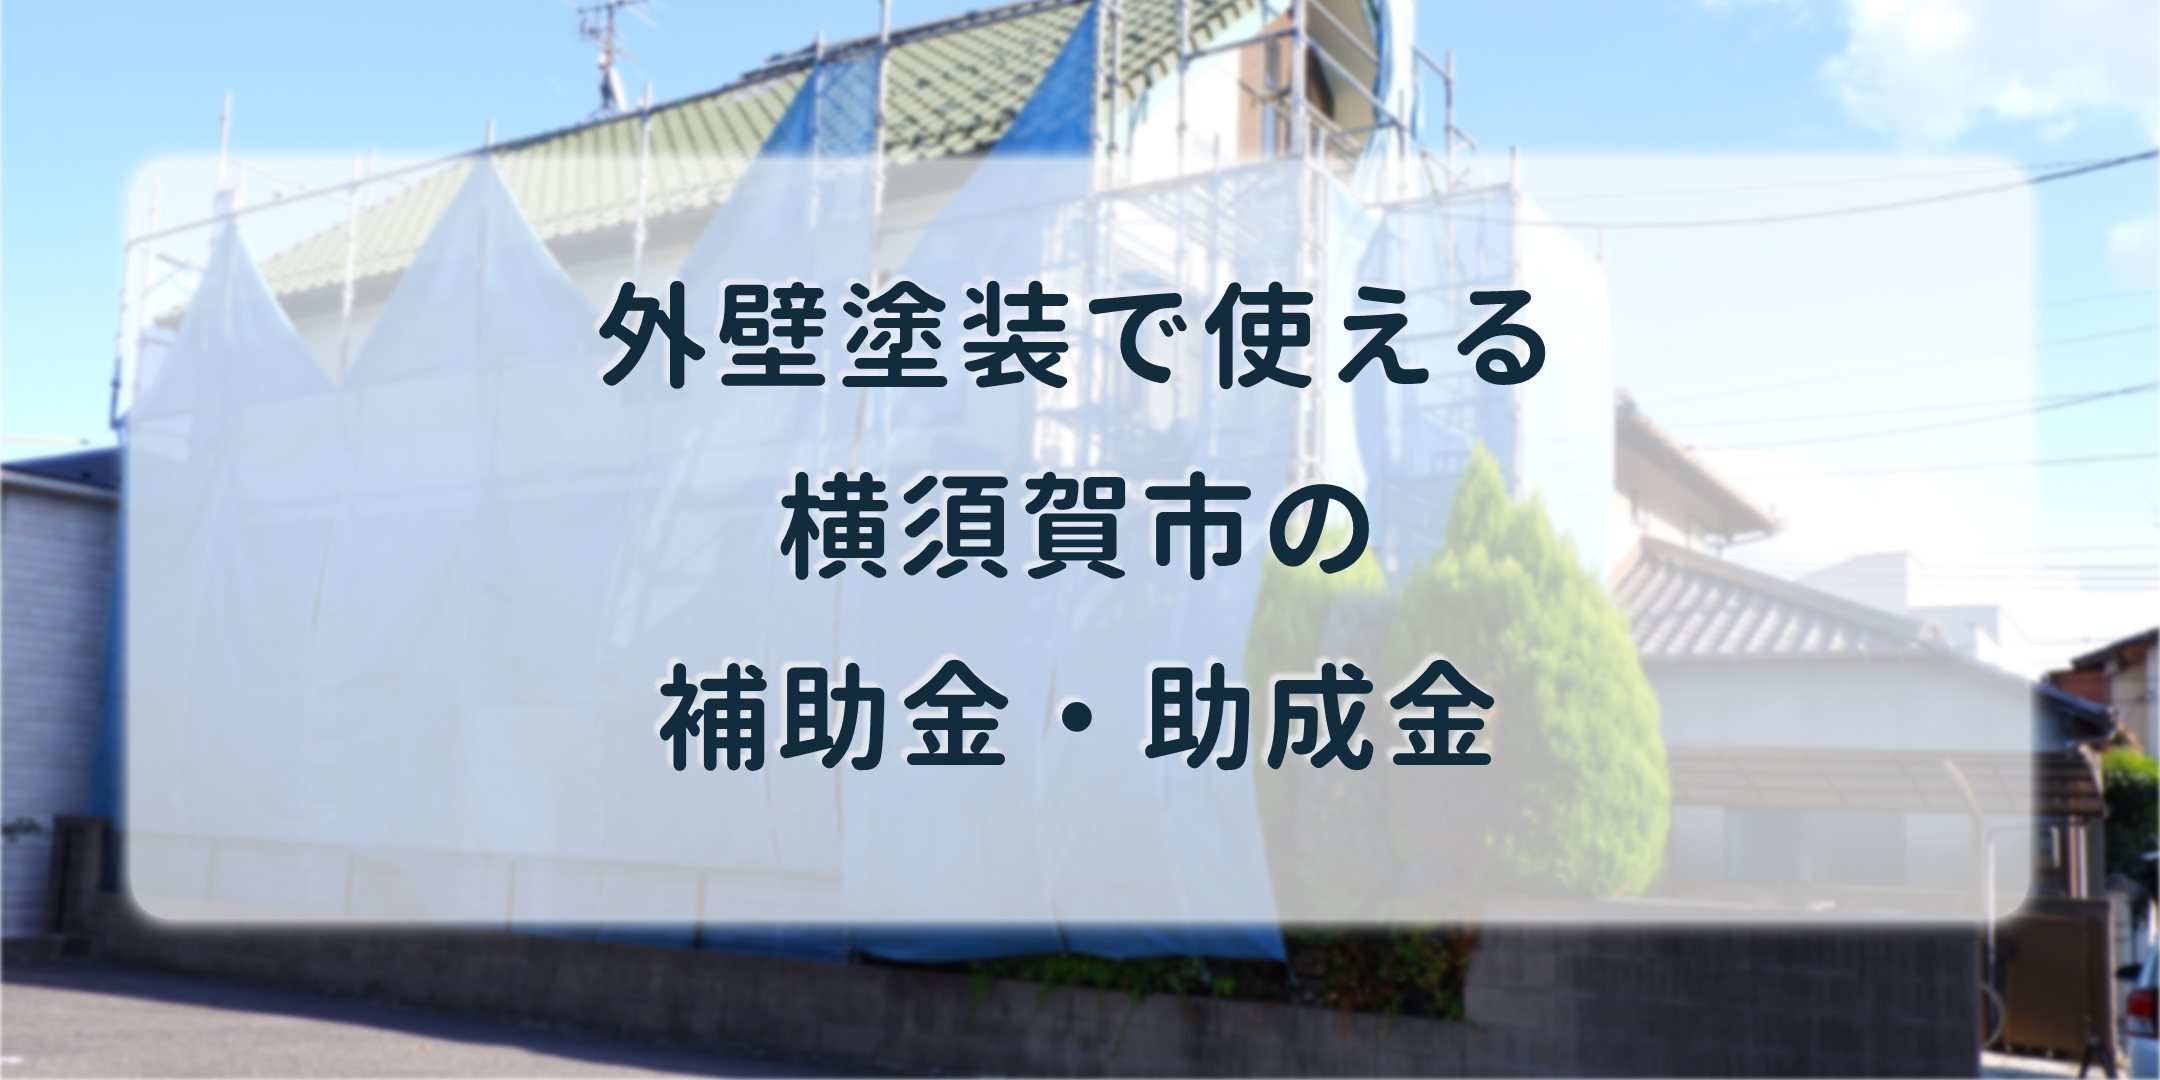 横須賀市の外壁塗装で補助金 2世帯住宅なら最大30万円